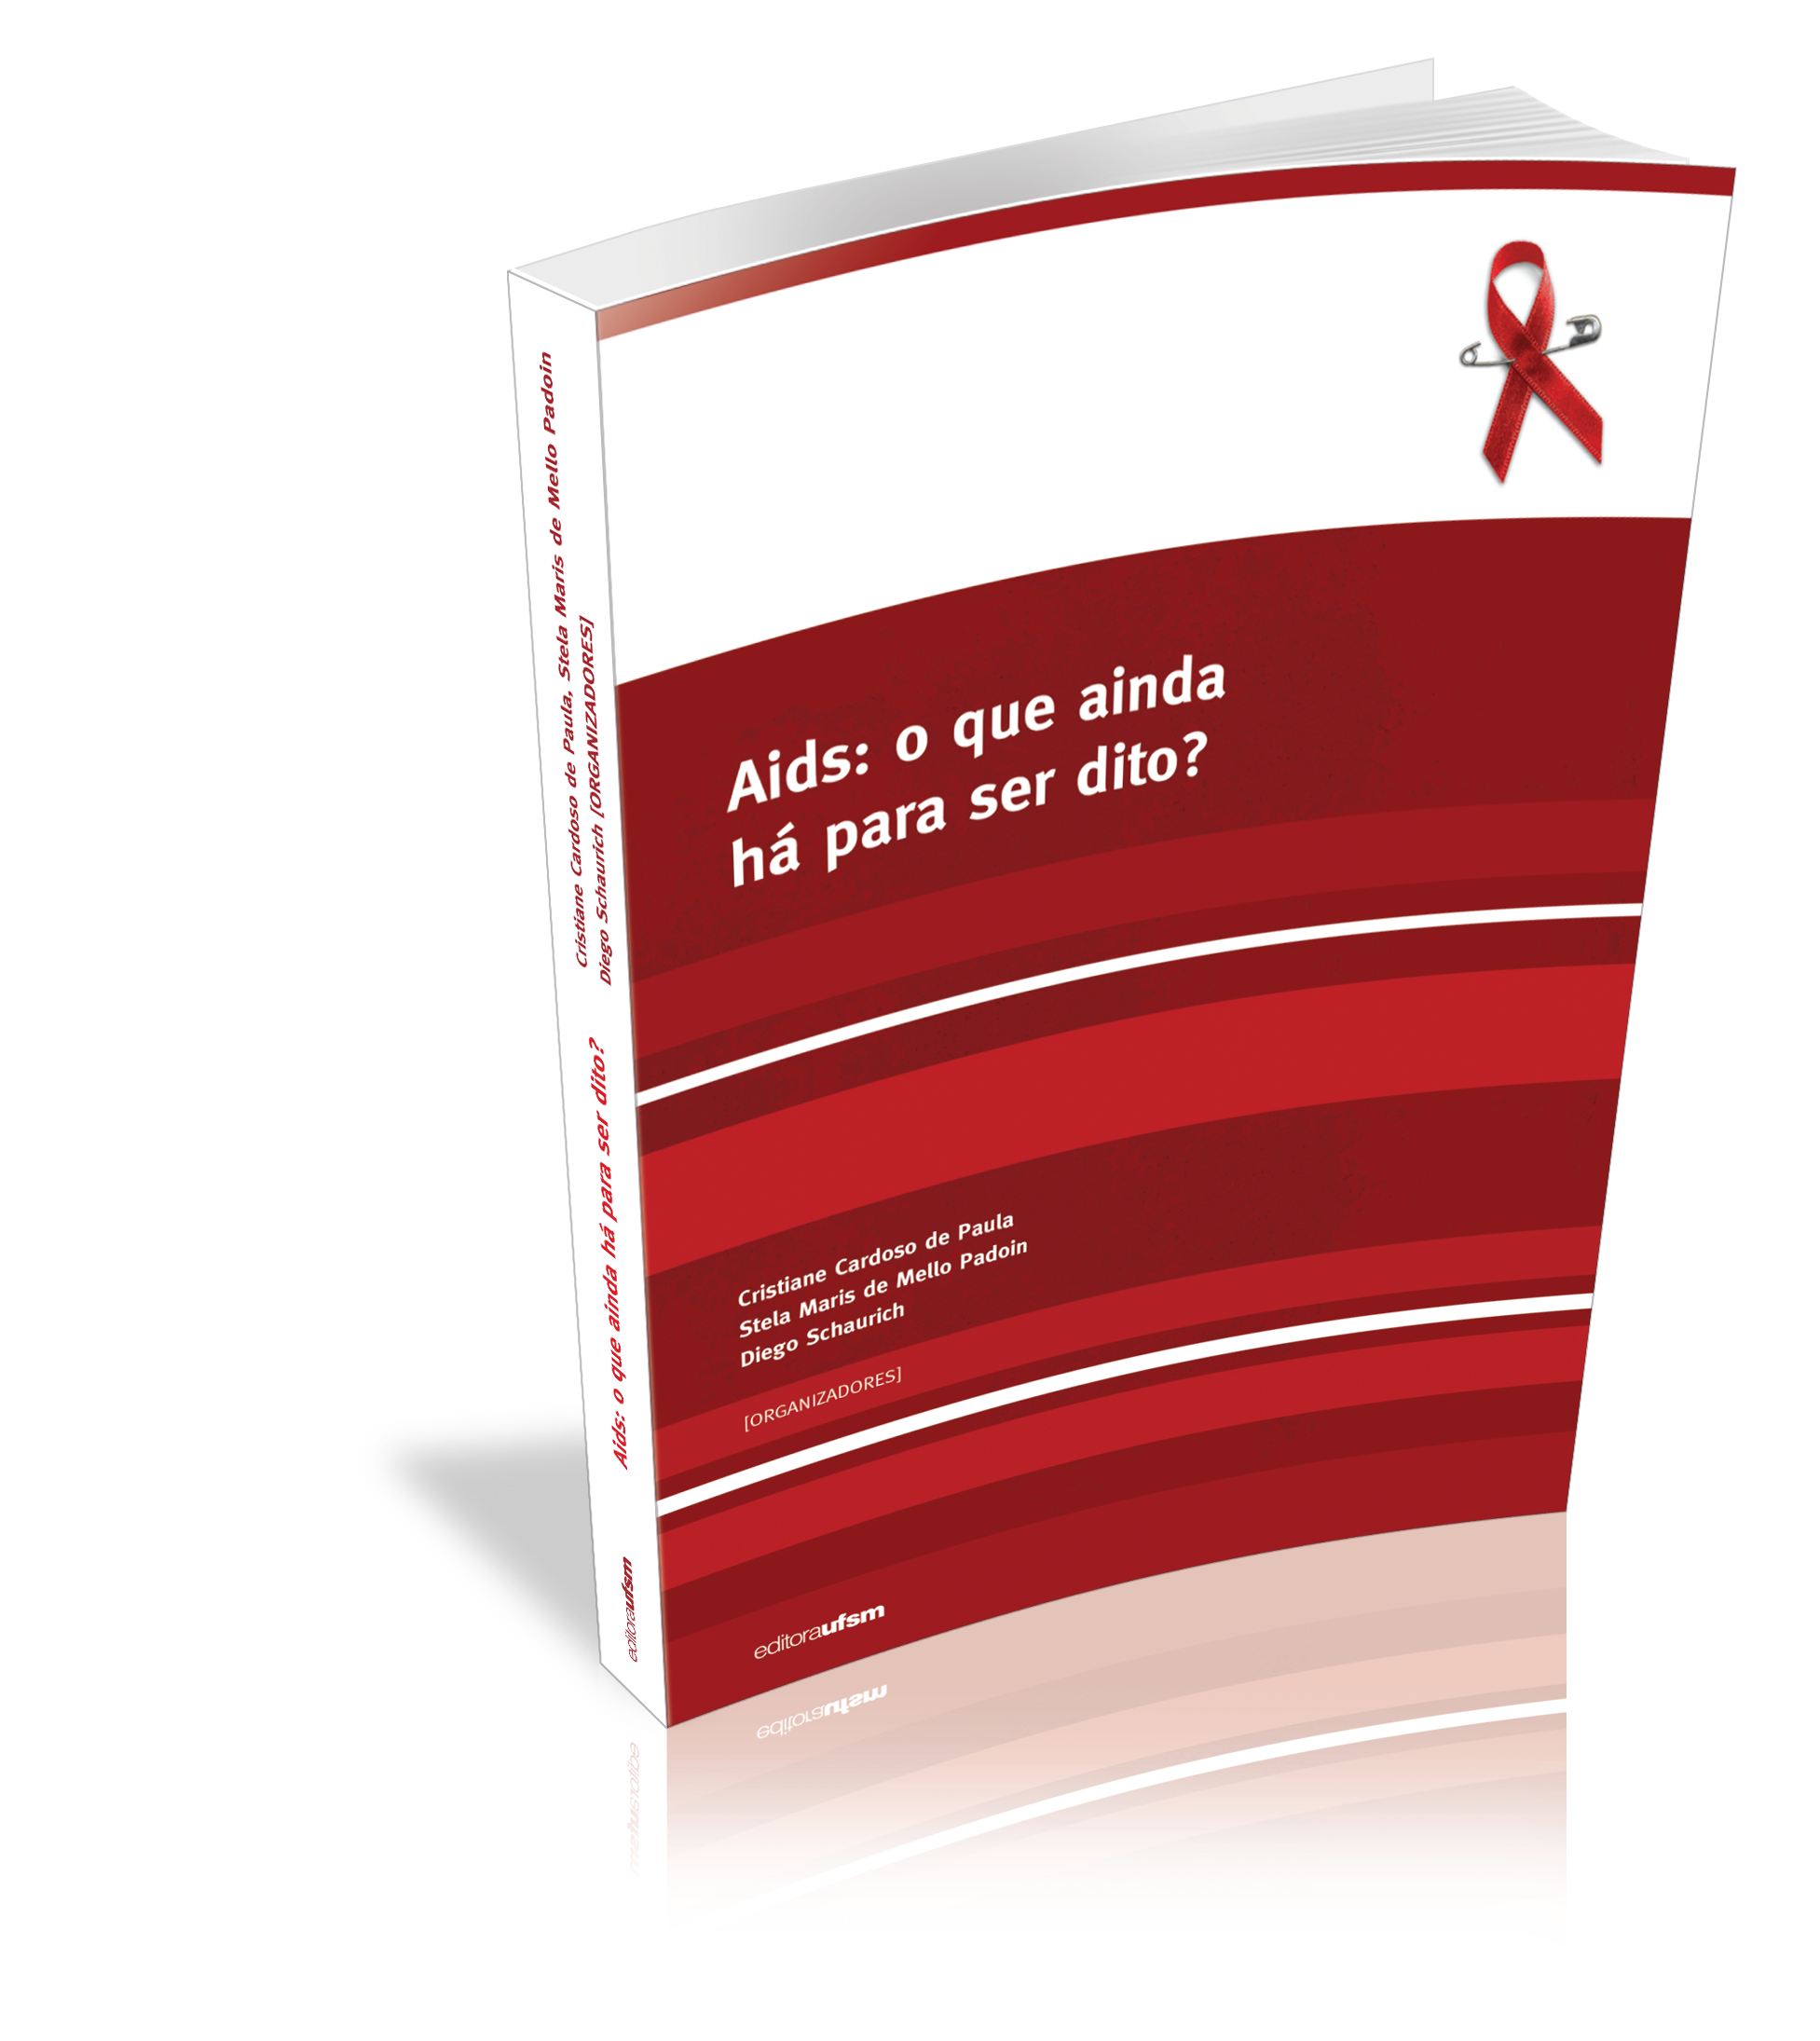 Capa do livro Aids: o que ainda há para ser dito?